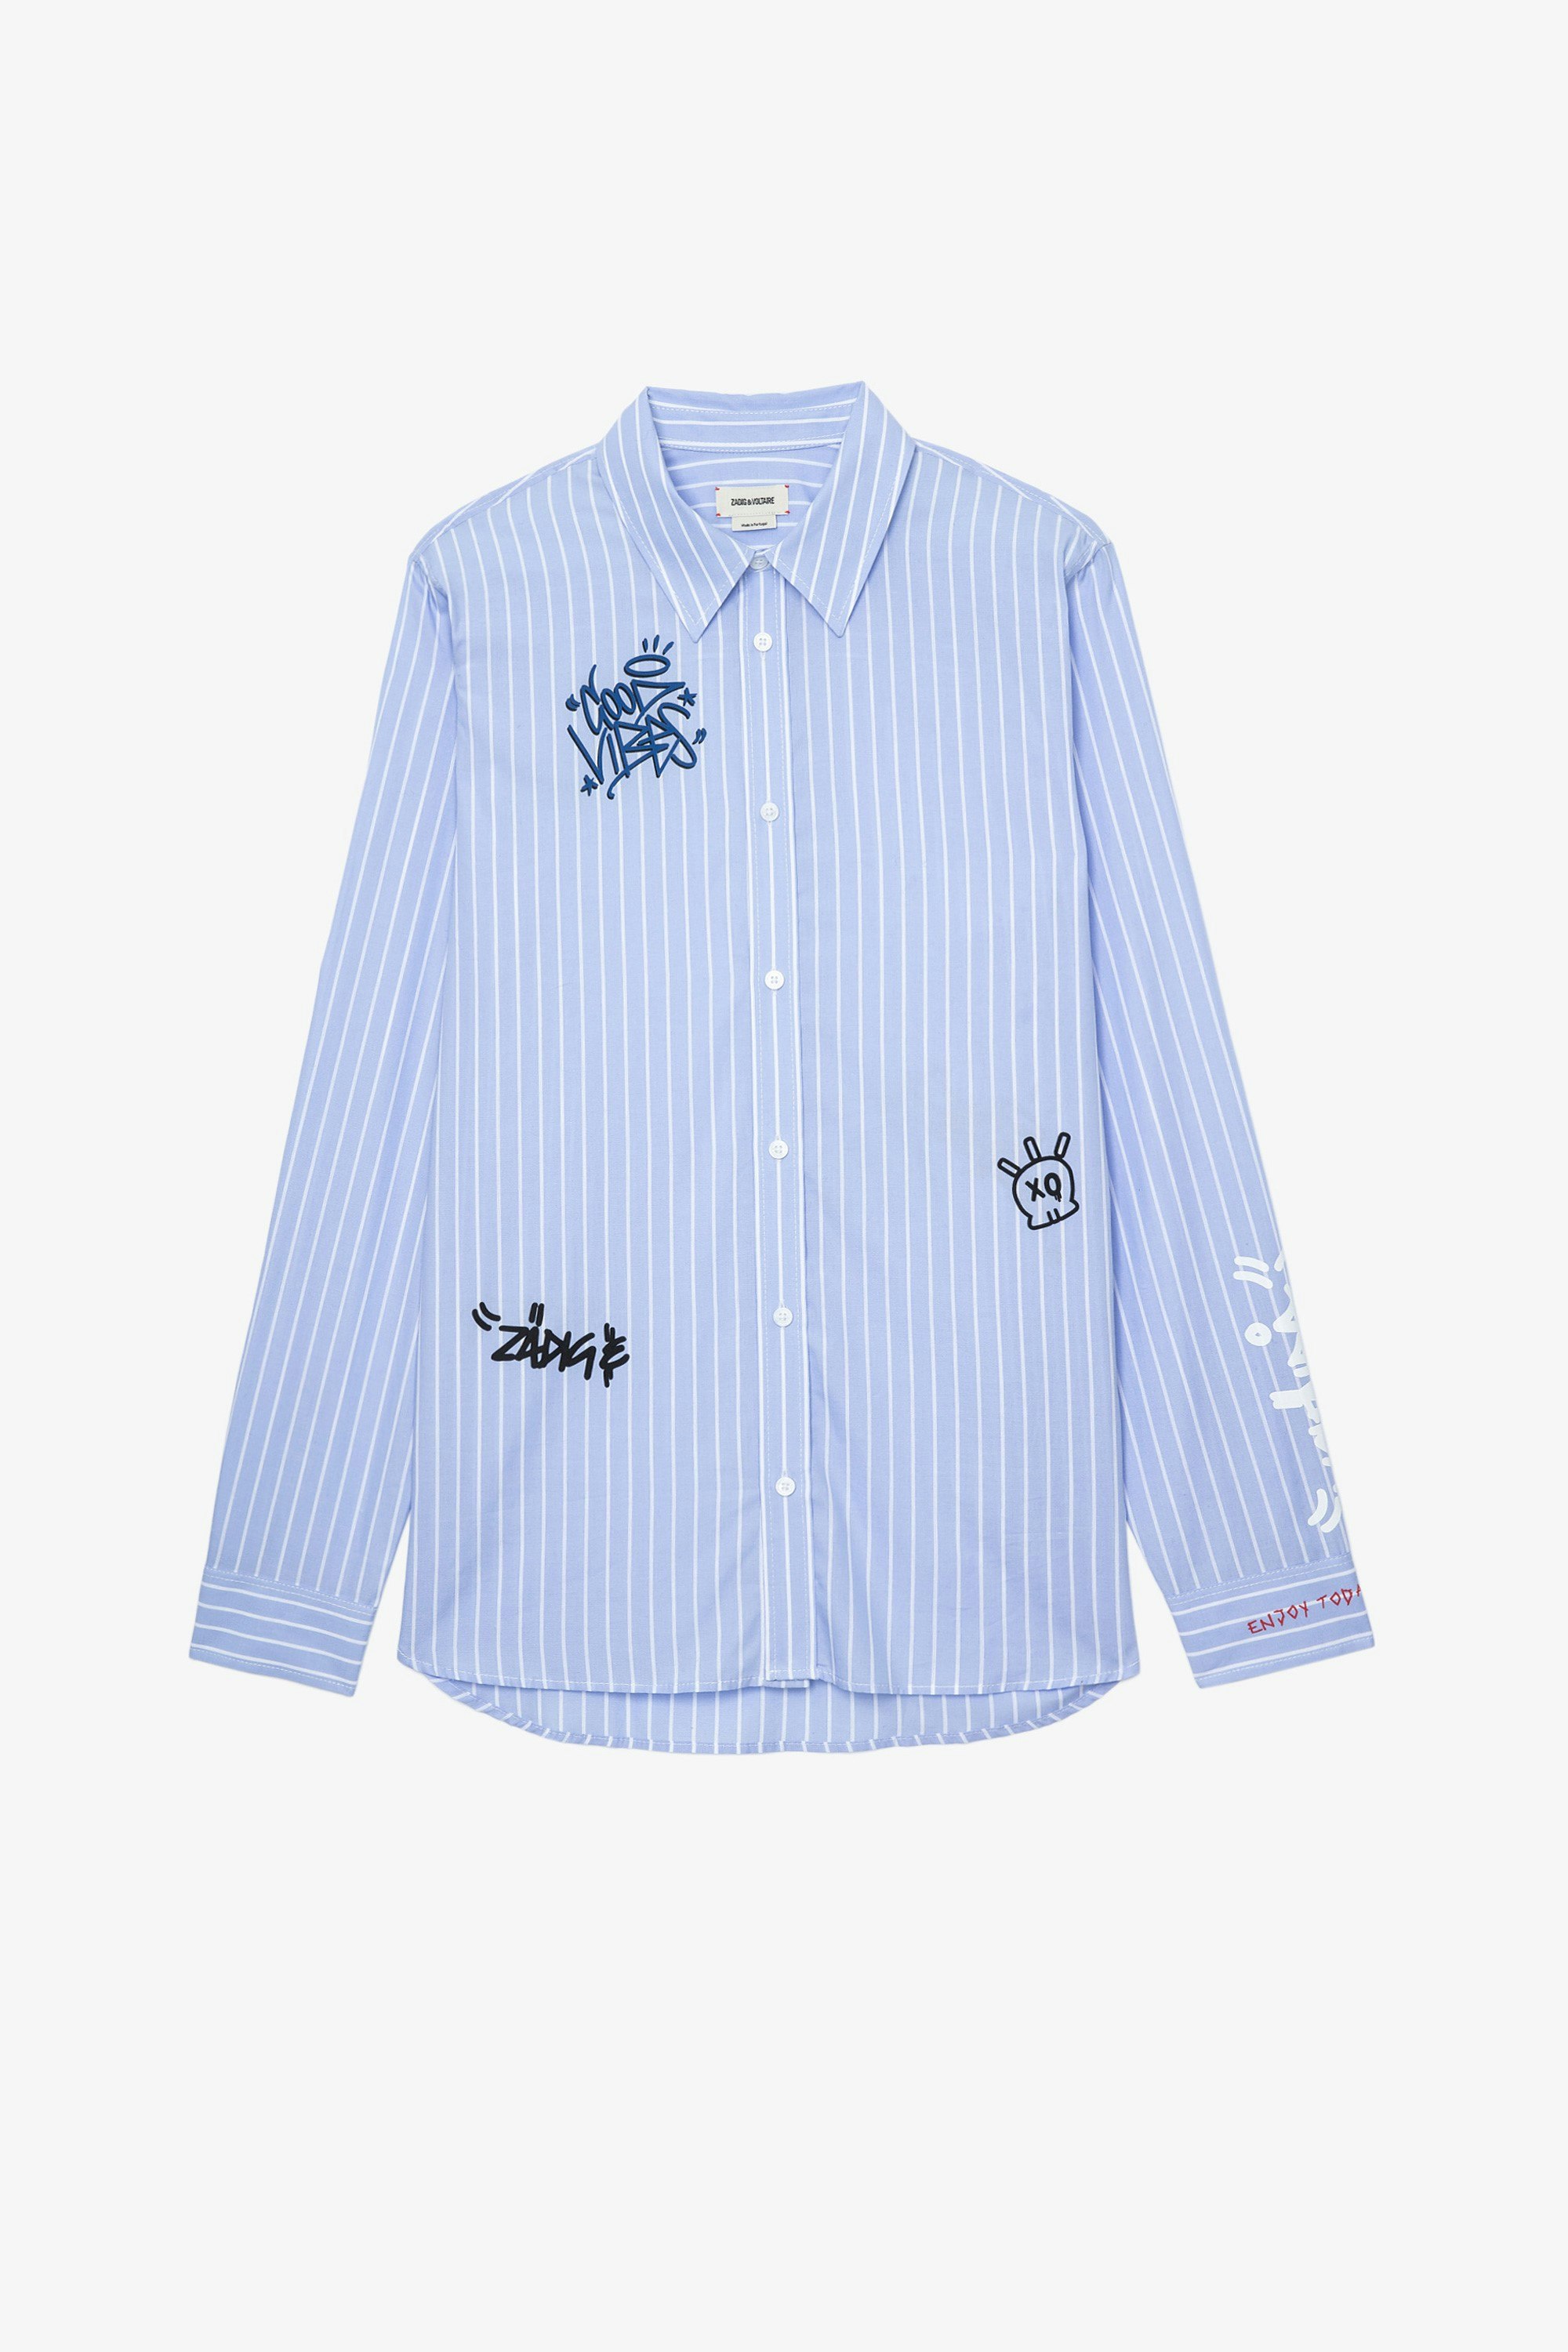 Stan Shirt Men’s light blue cotton poplin shirt with street art motifs